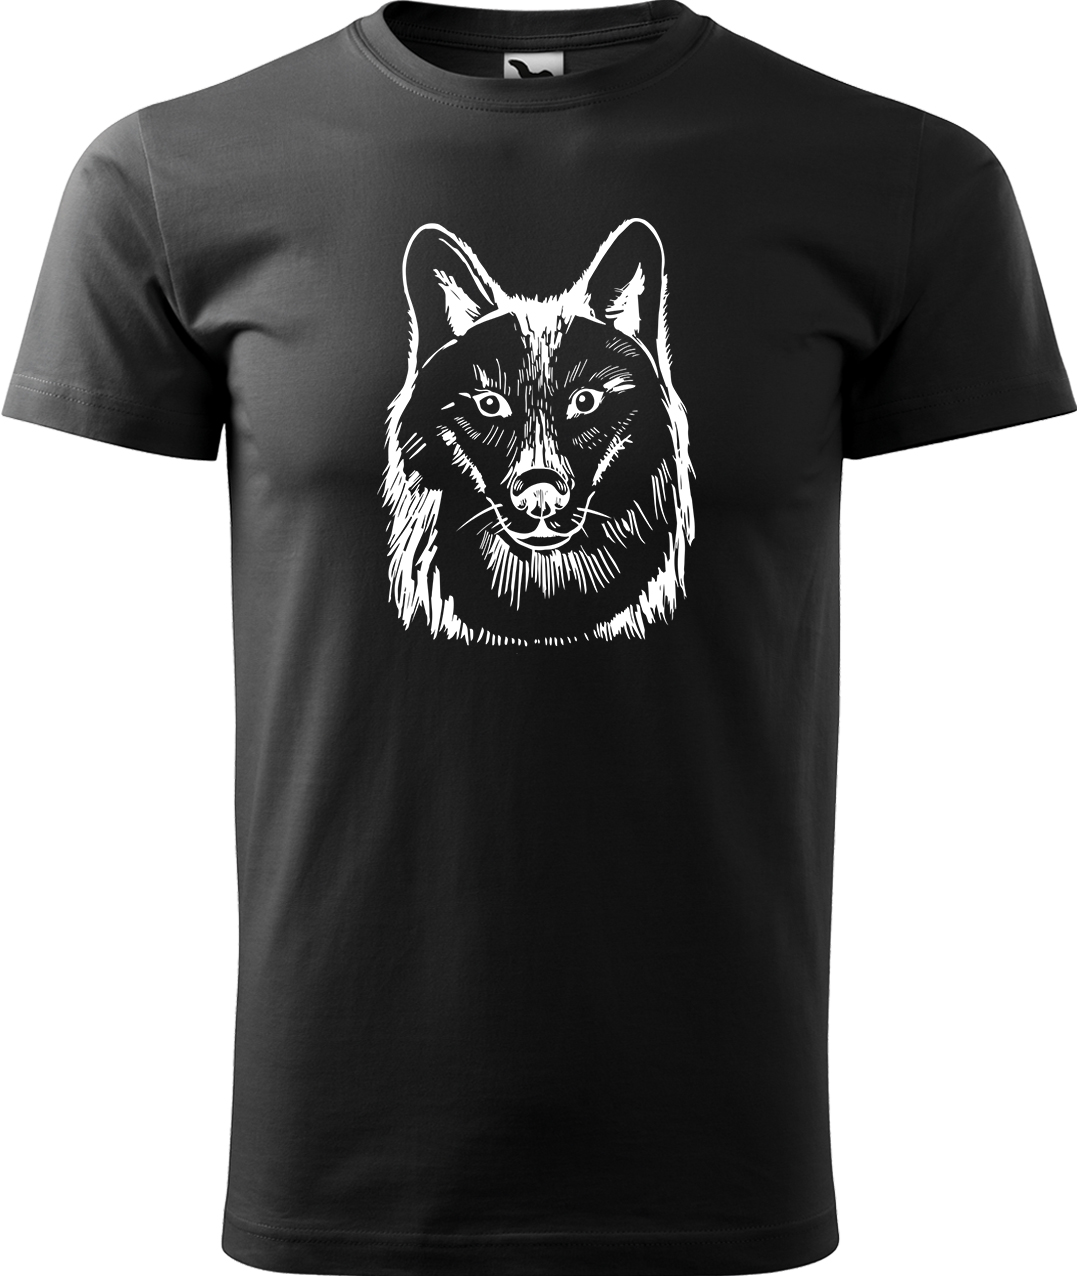 Pánské tričko s vlkem - Kresba vlka Velikost: 3XL, Barva: Černá (01), Střih: pánský